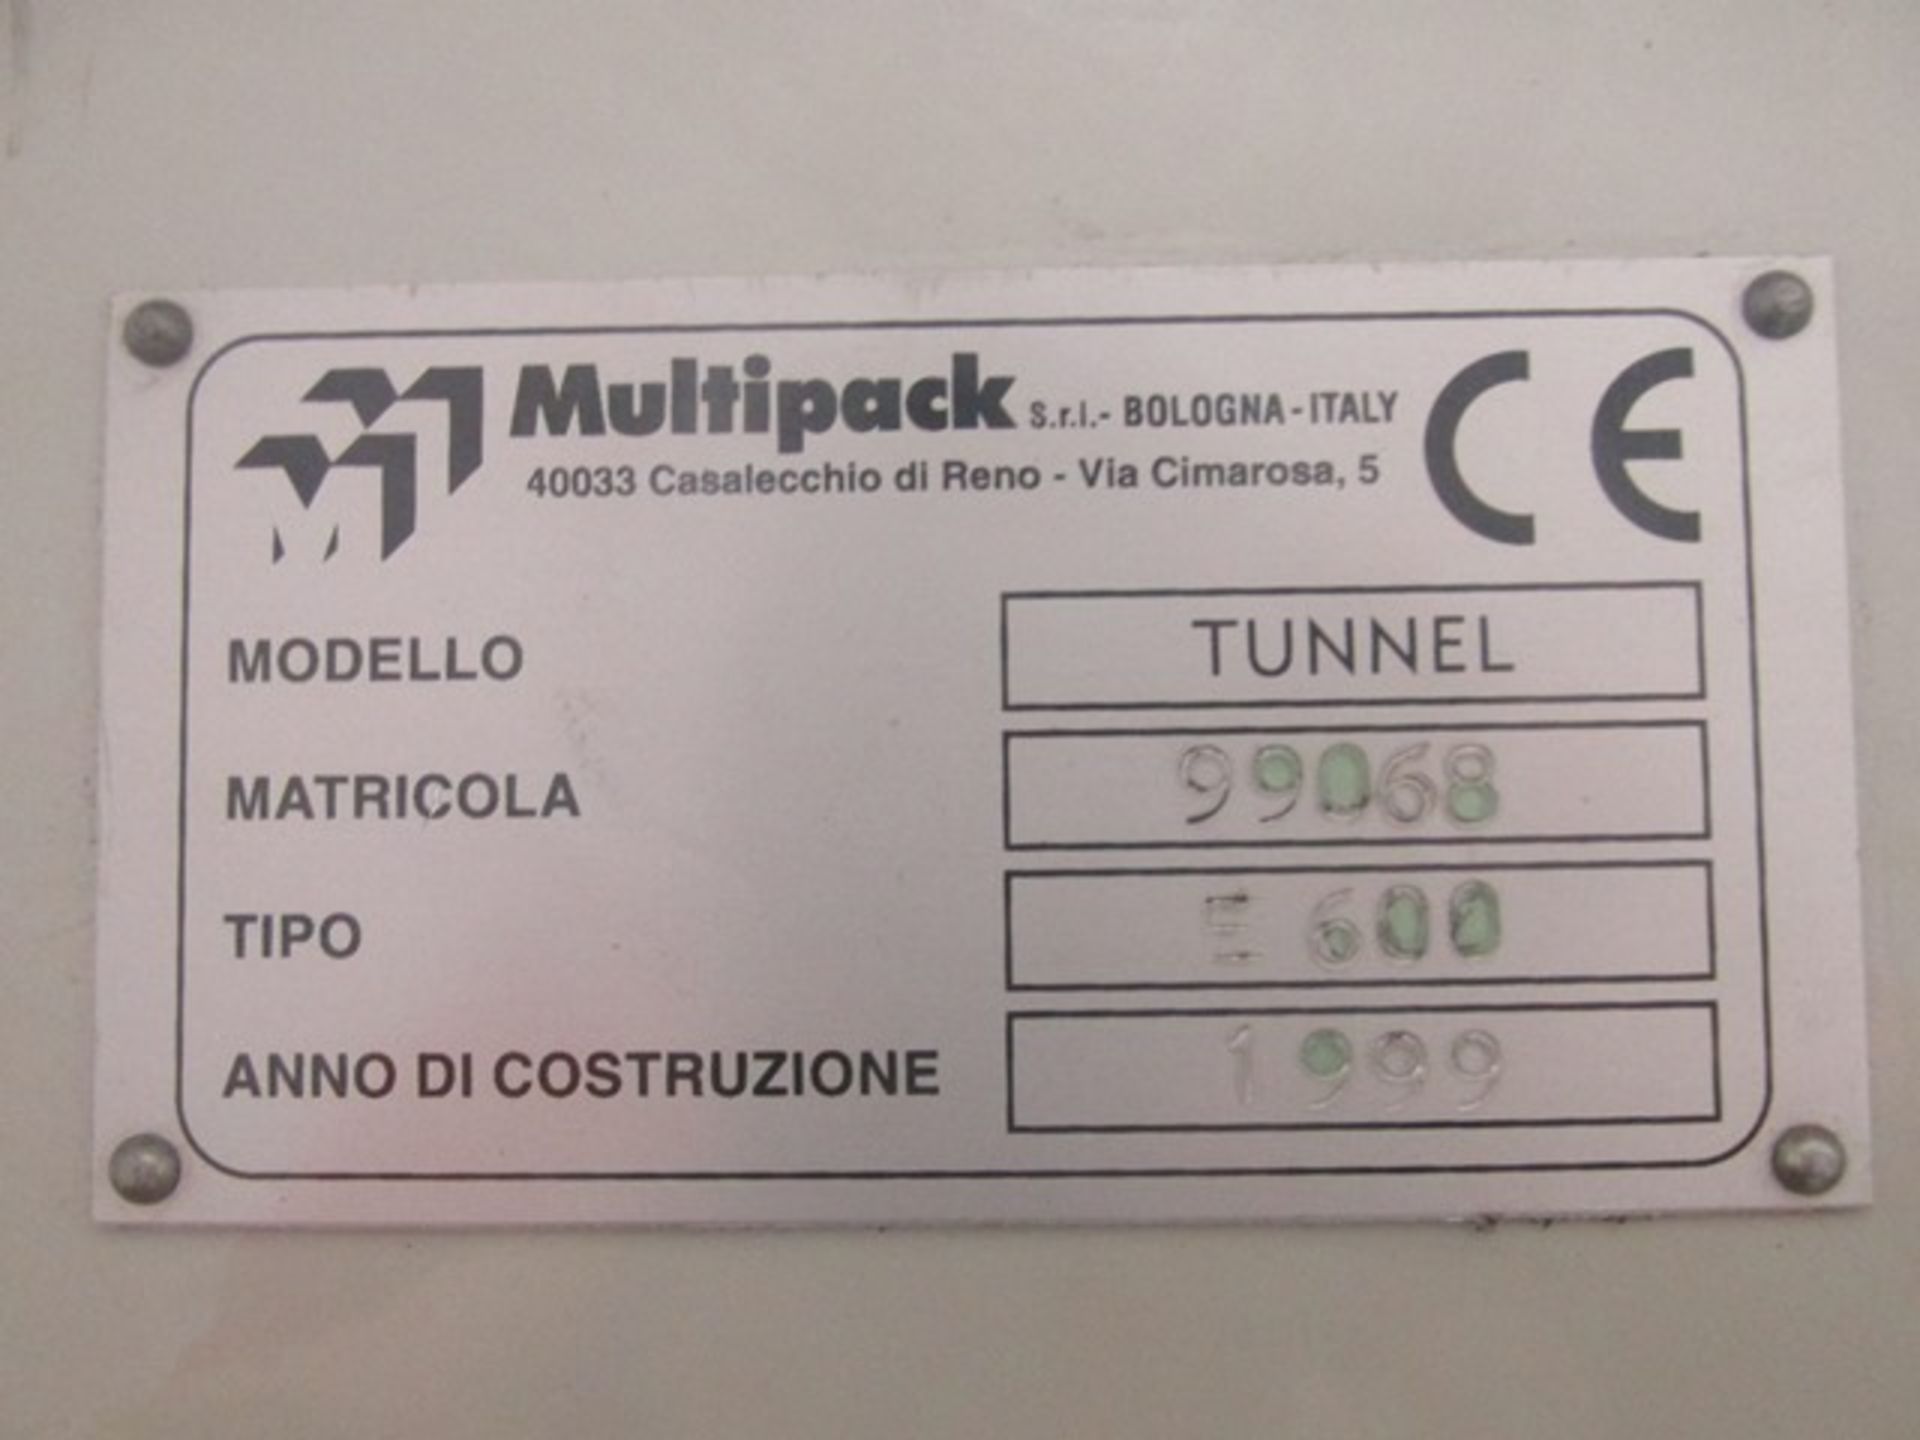 Multipack bundler, model F 43 bundler, rated up to 45 bundles/minute - Image 16 of 19